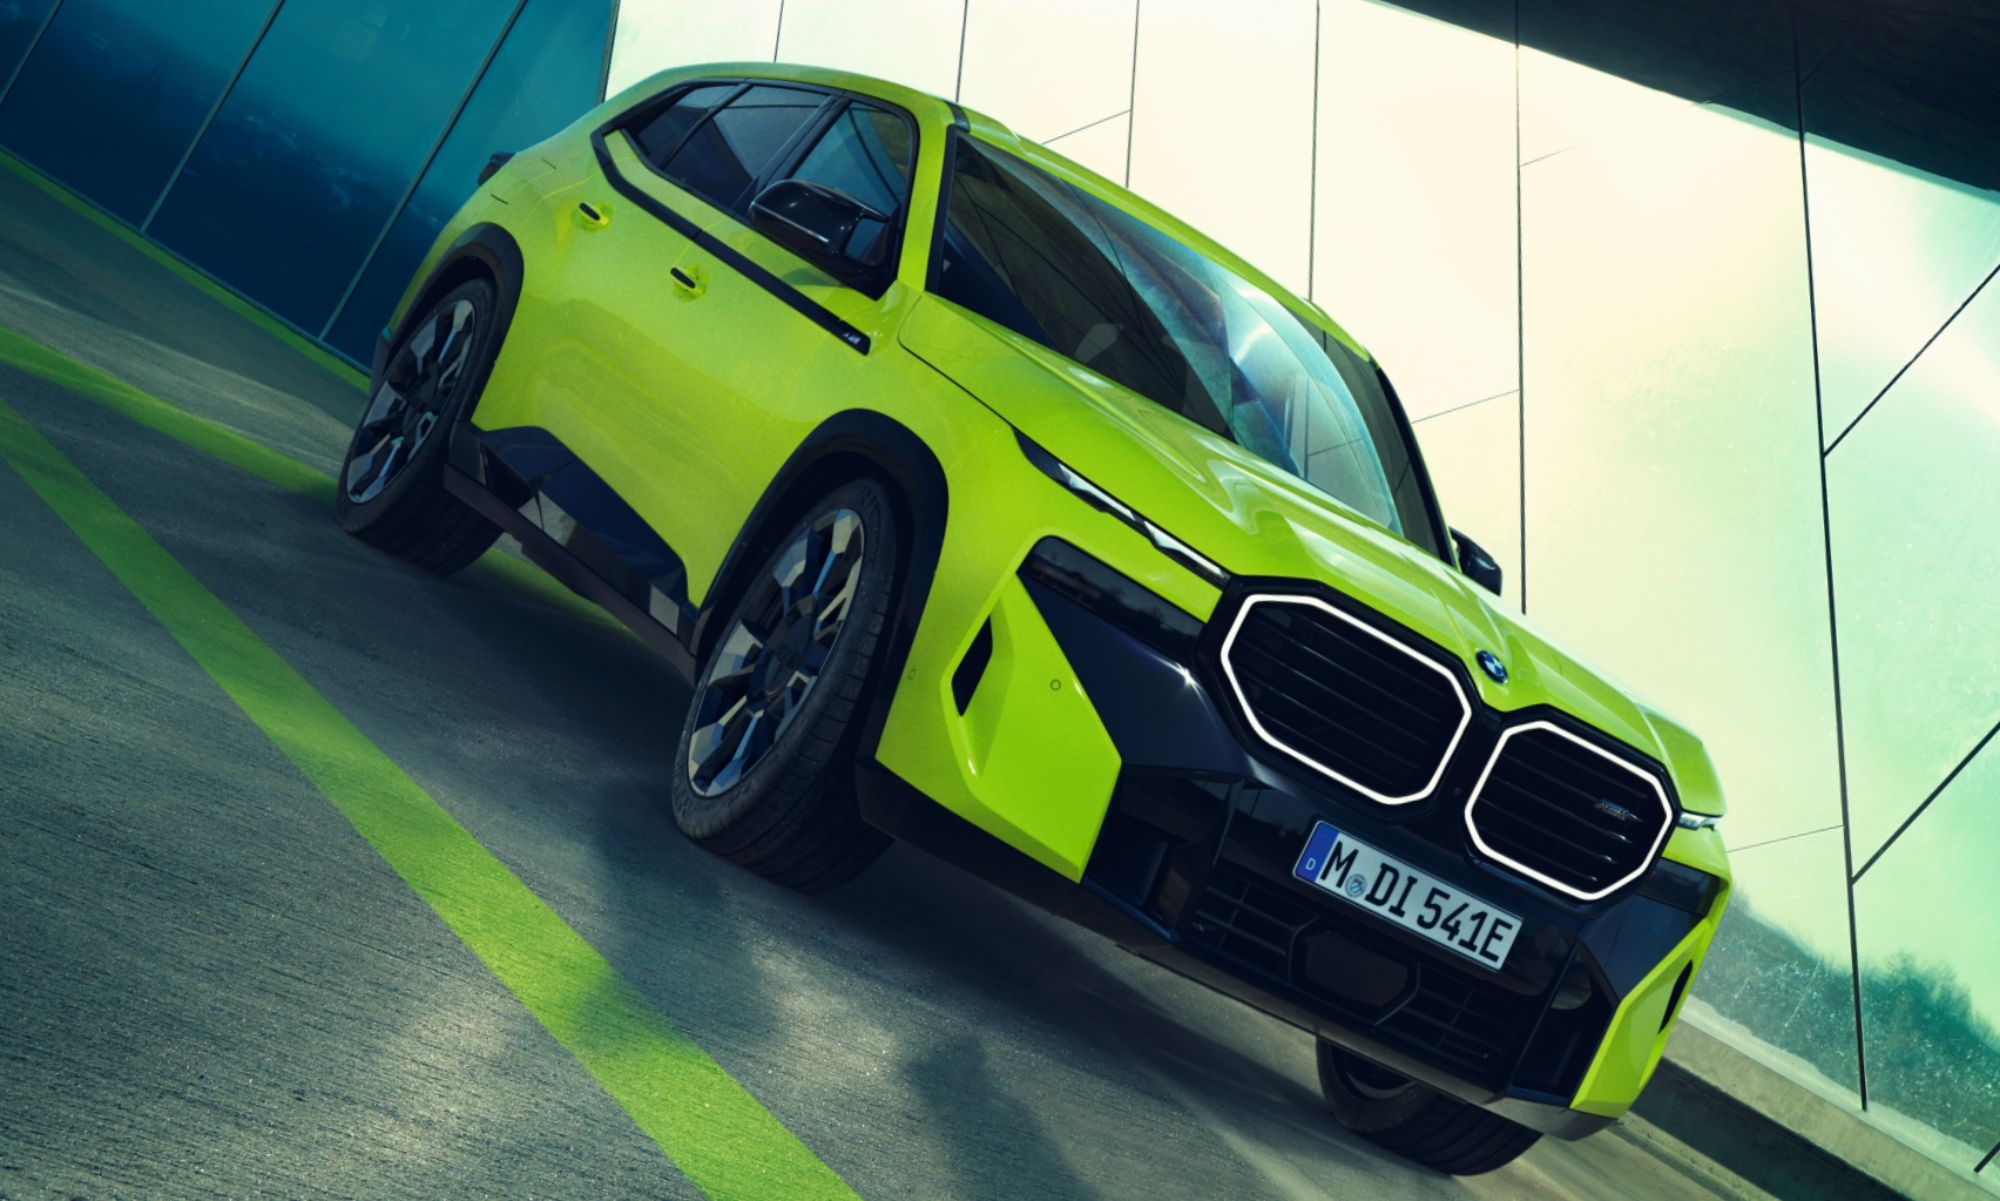 El nuevo BMW desarrolla 475 caballos de potencia y 700 Nm de par motor.